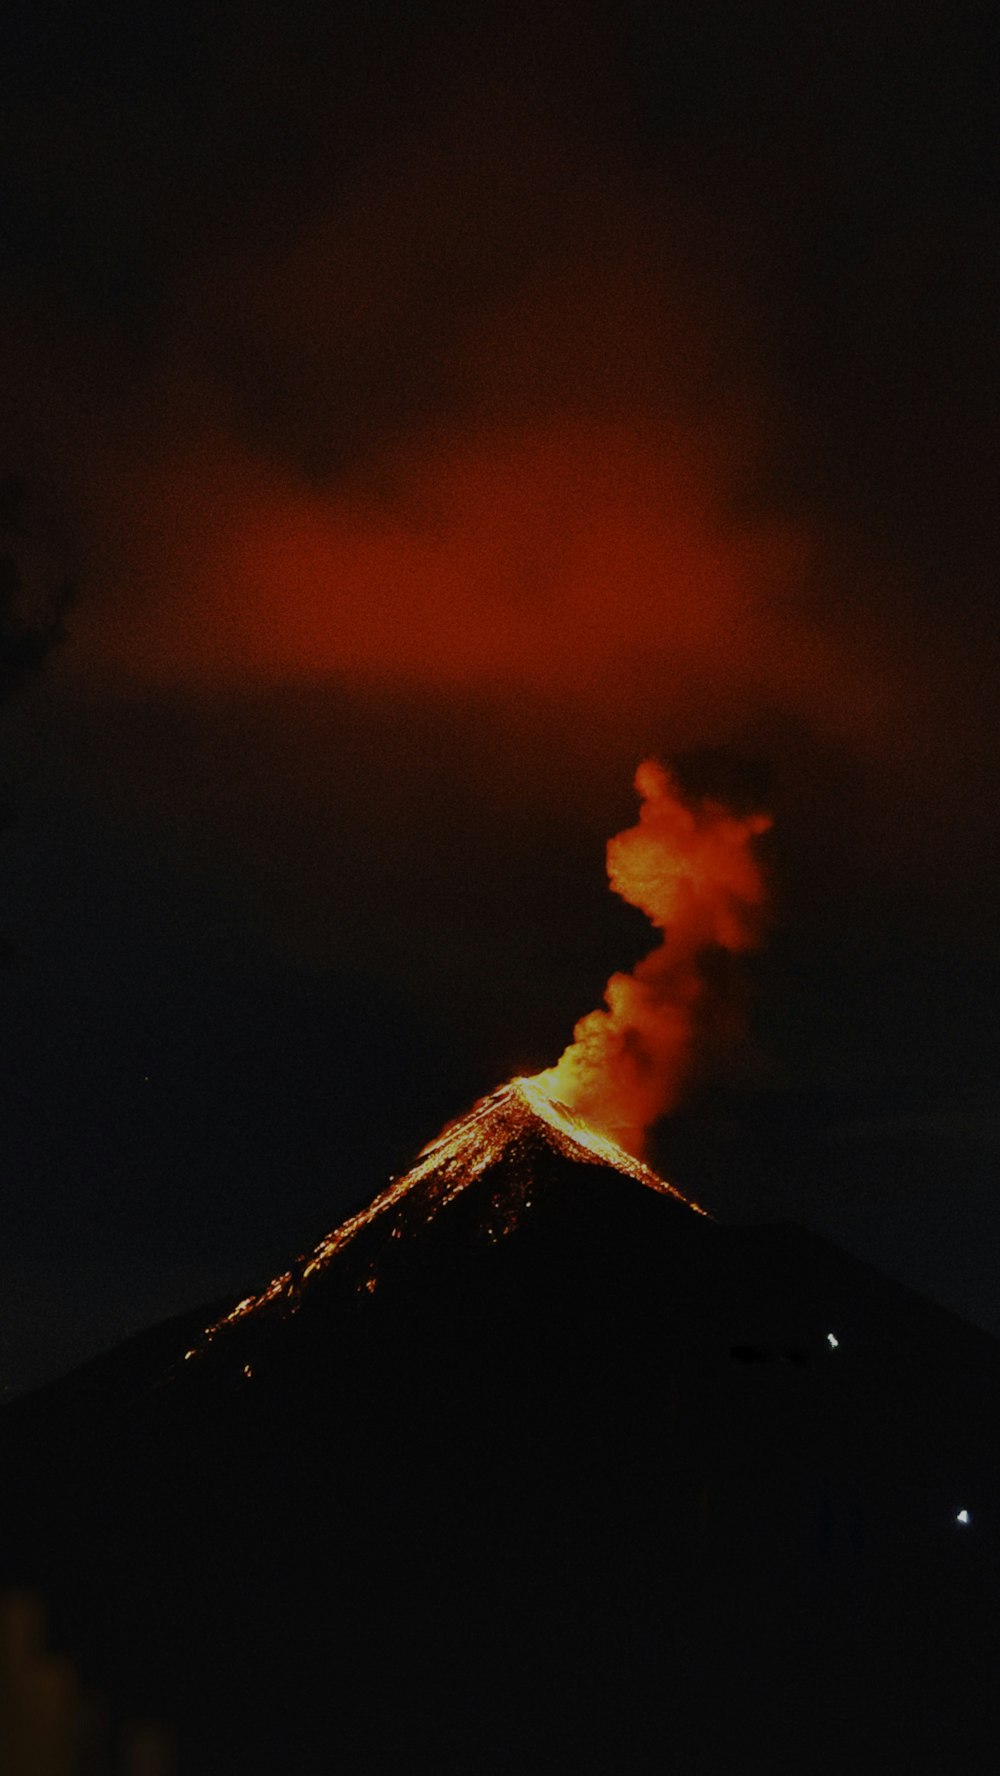 Un volcan fait éruption de fumée lorsqu’il entre en éruption dans le ciel nocturne